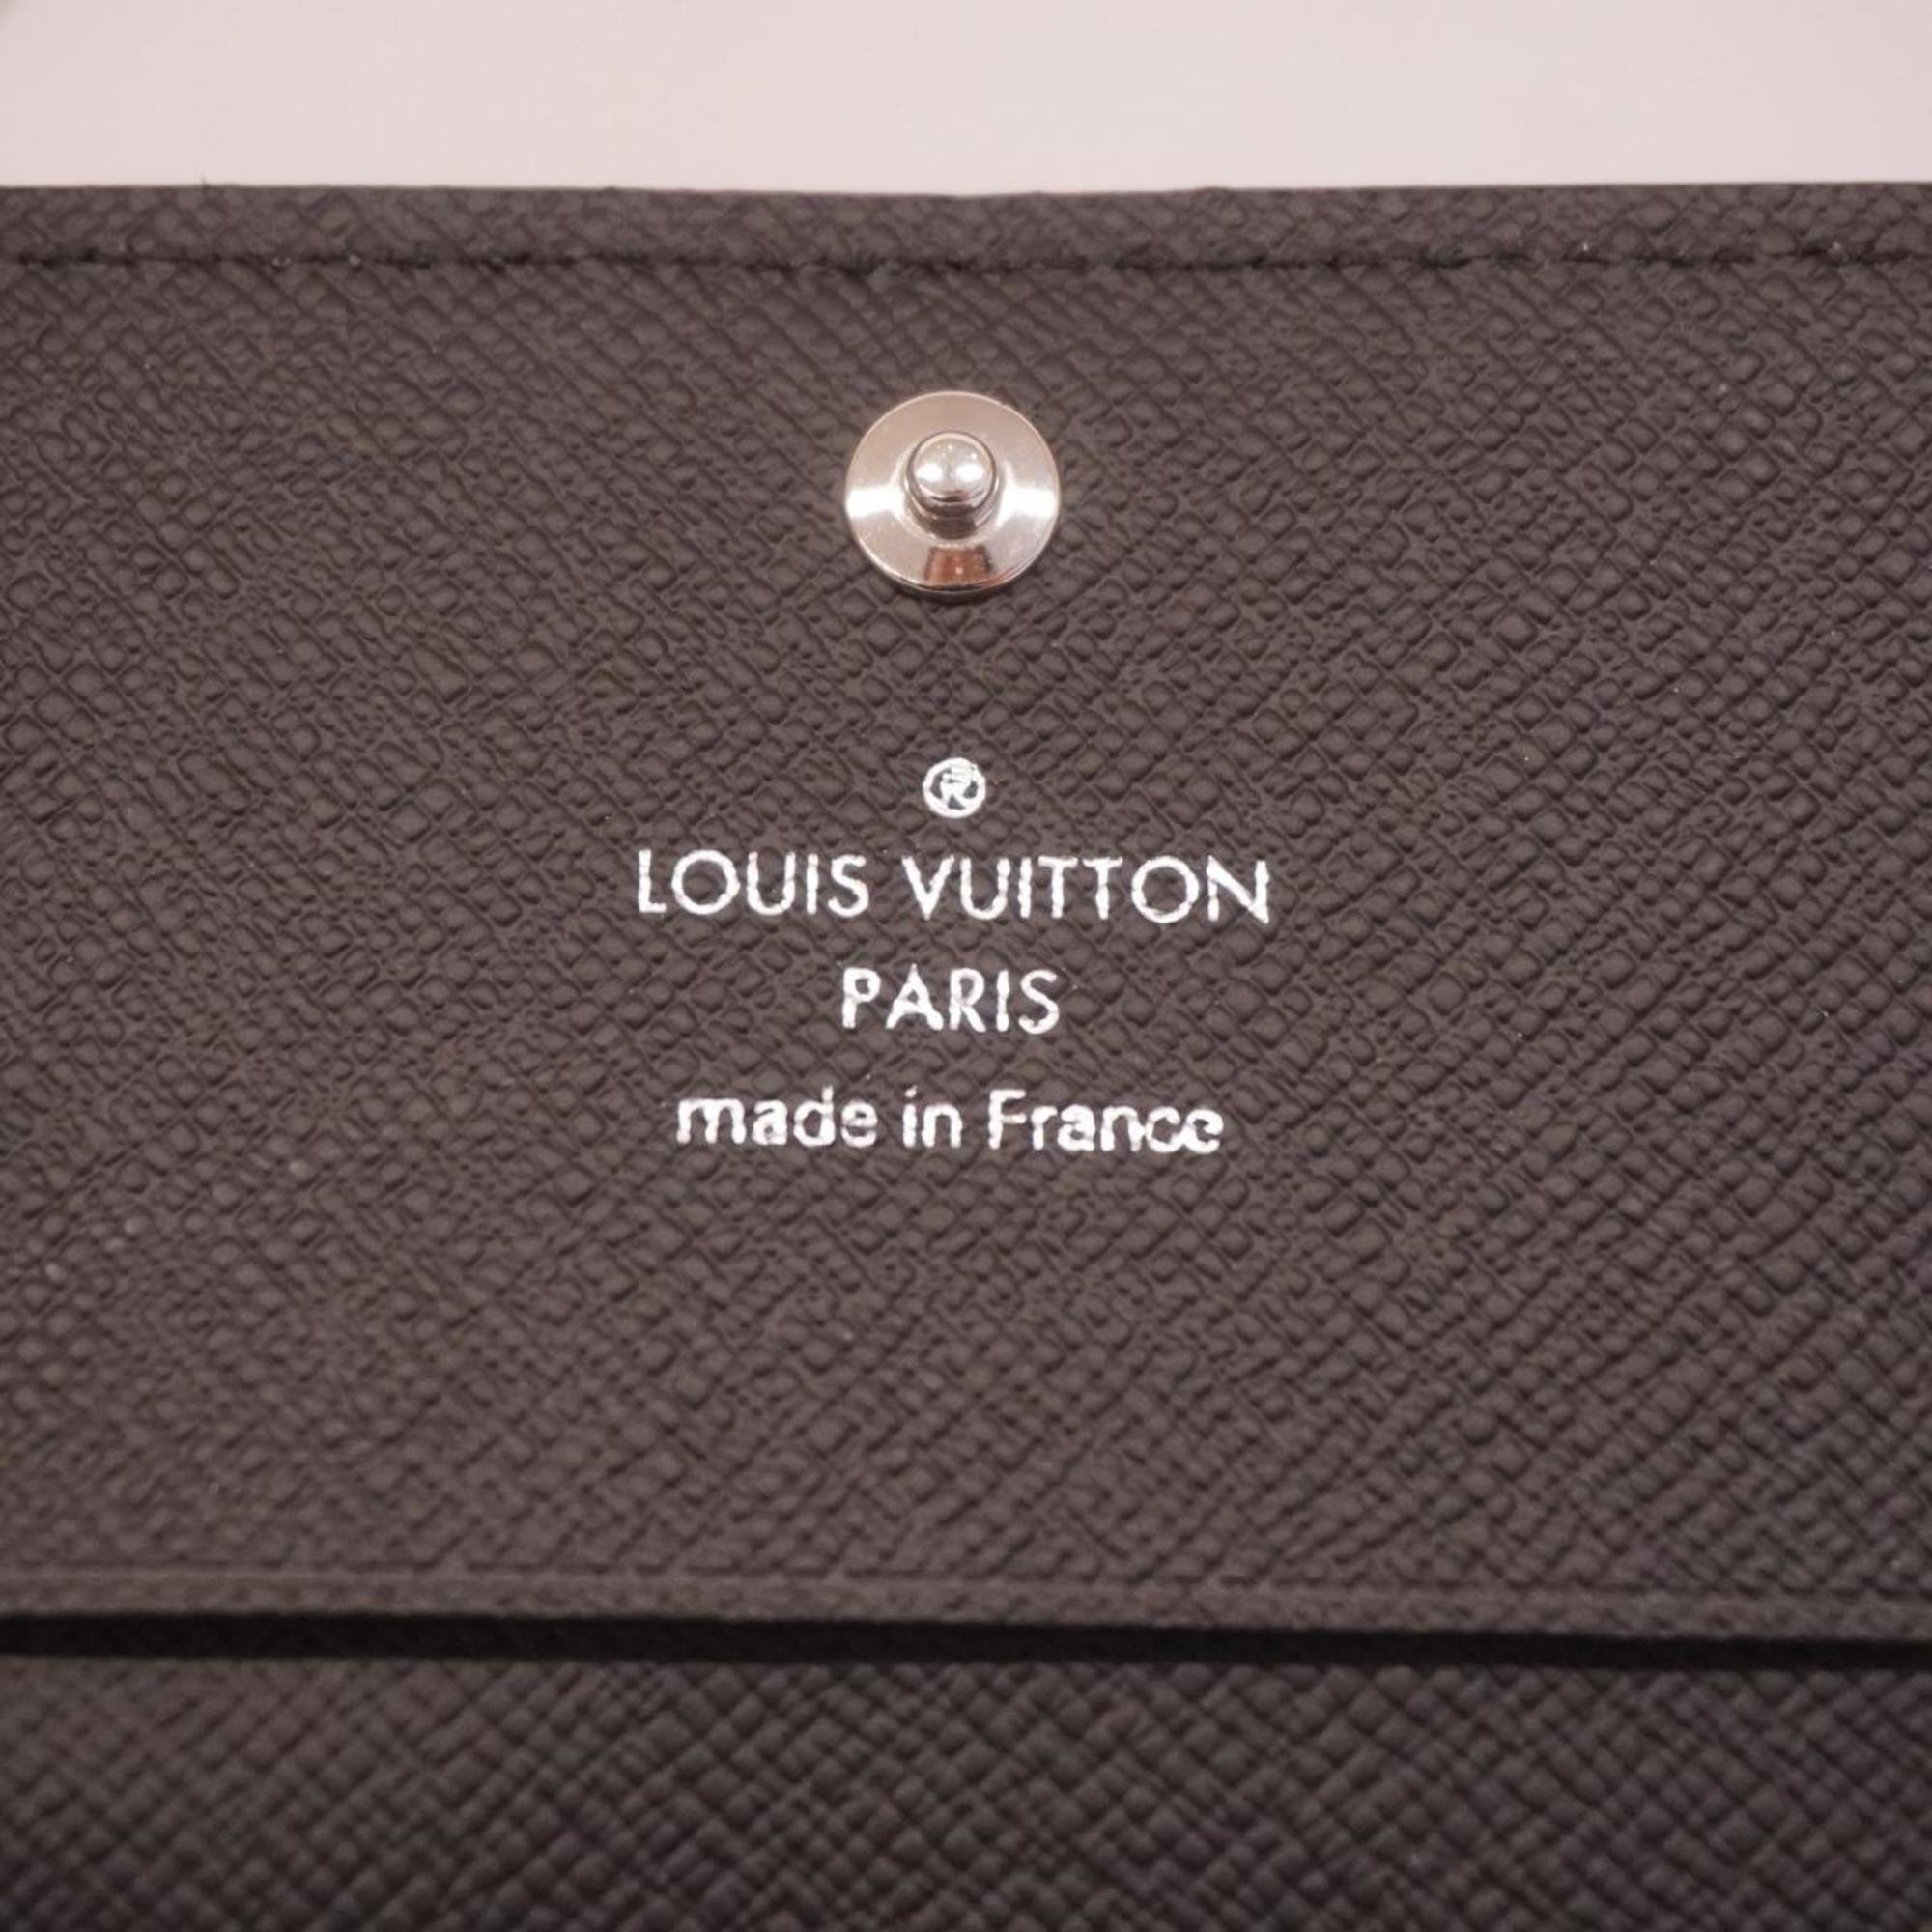 Louis Vuitton Business Card Holder Taiga Envelope Carte de Visite NM M64595 Black Men's